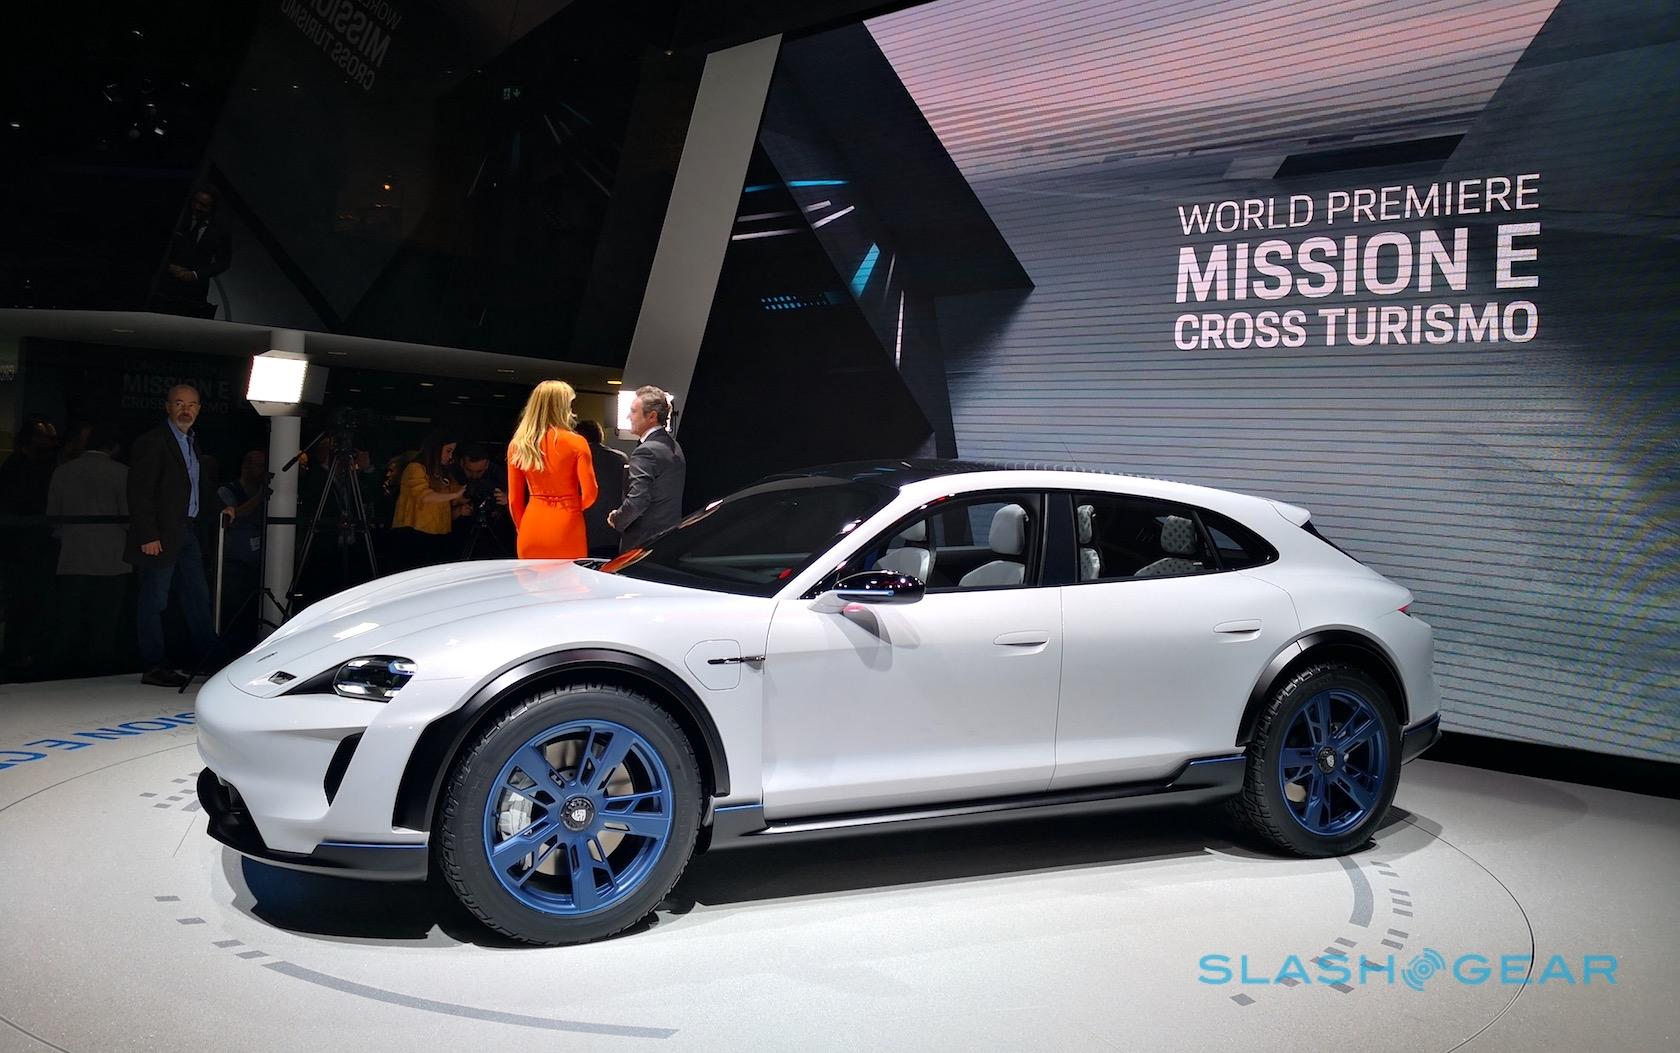 Porsche Mission E Cross Turismo teases EV crossover to rival Tesla - SlashGear